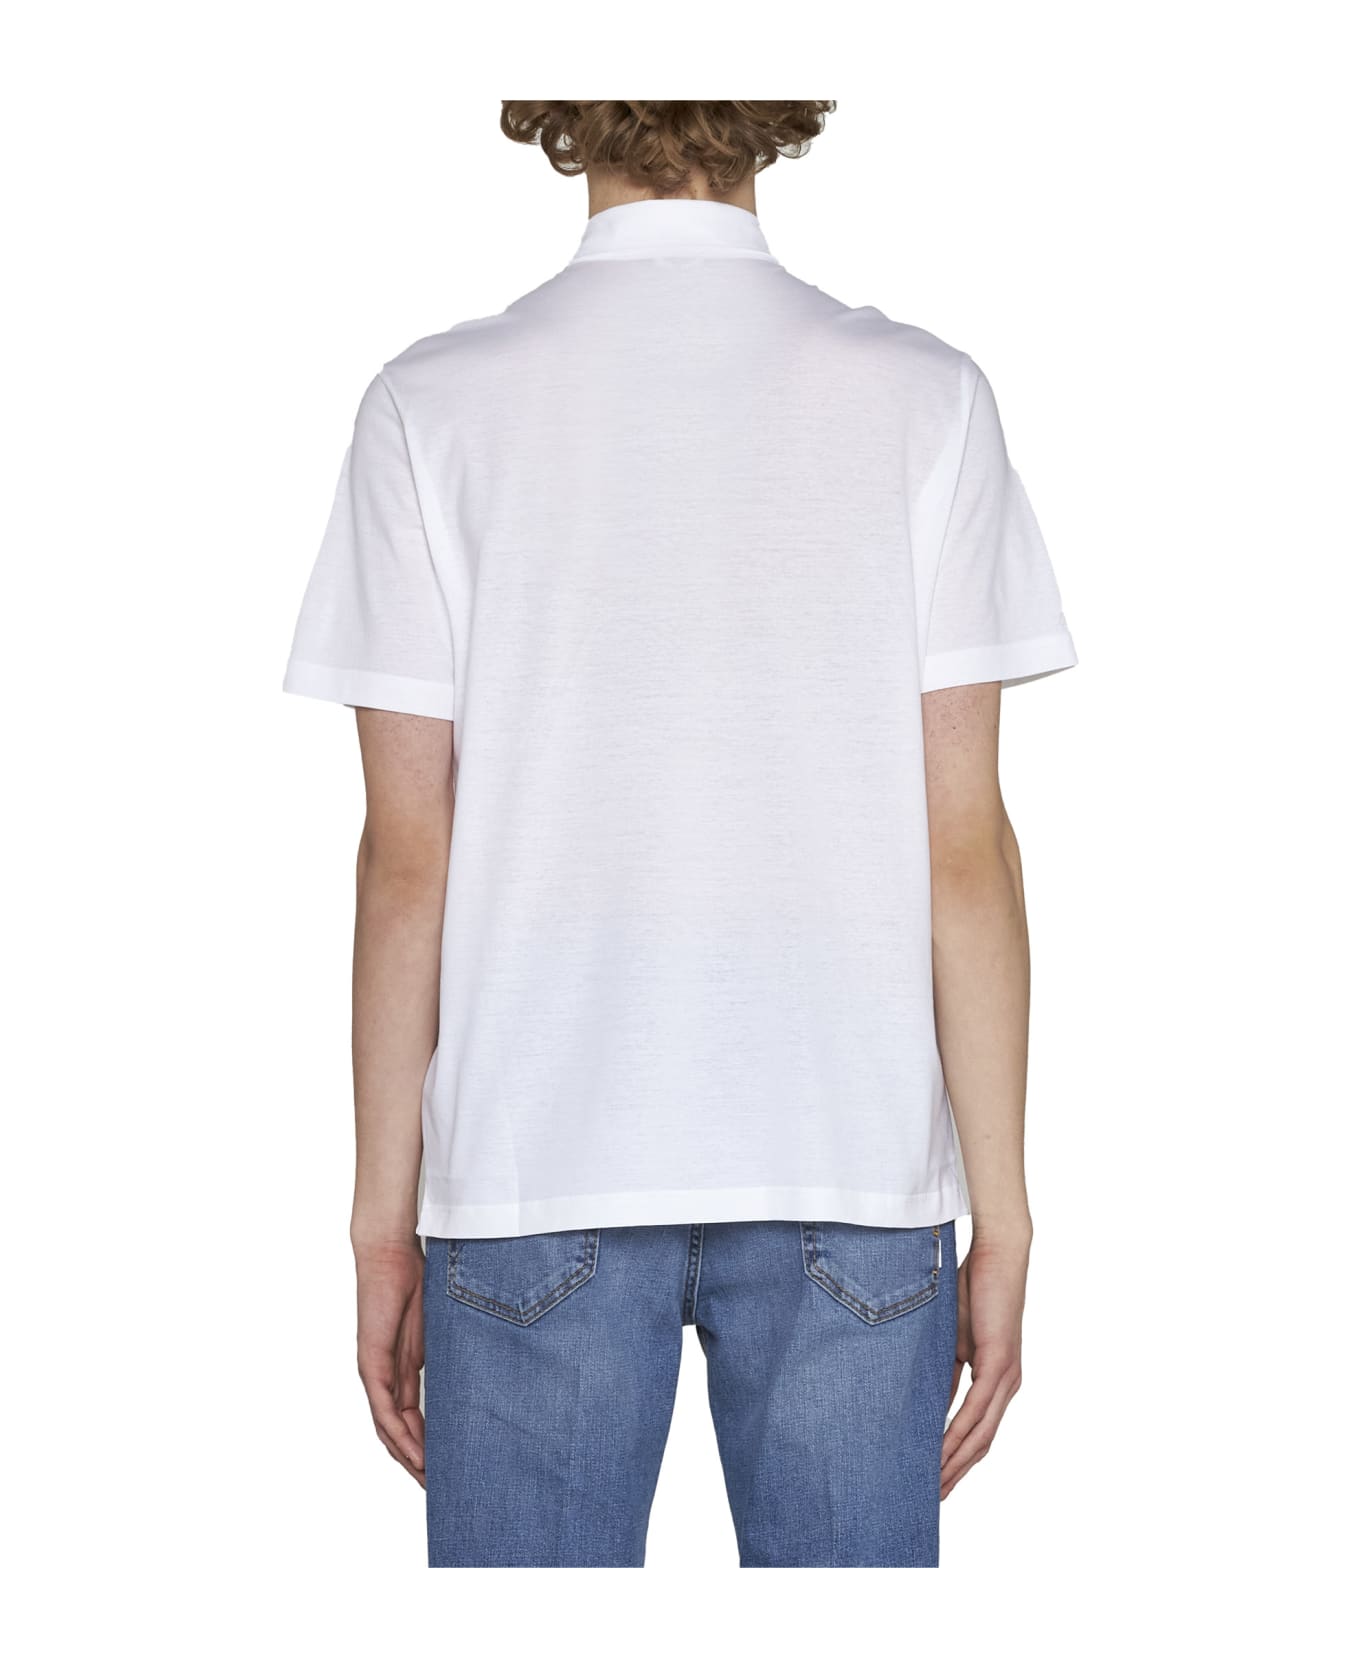 Herno Polo Shirt - White